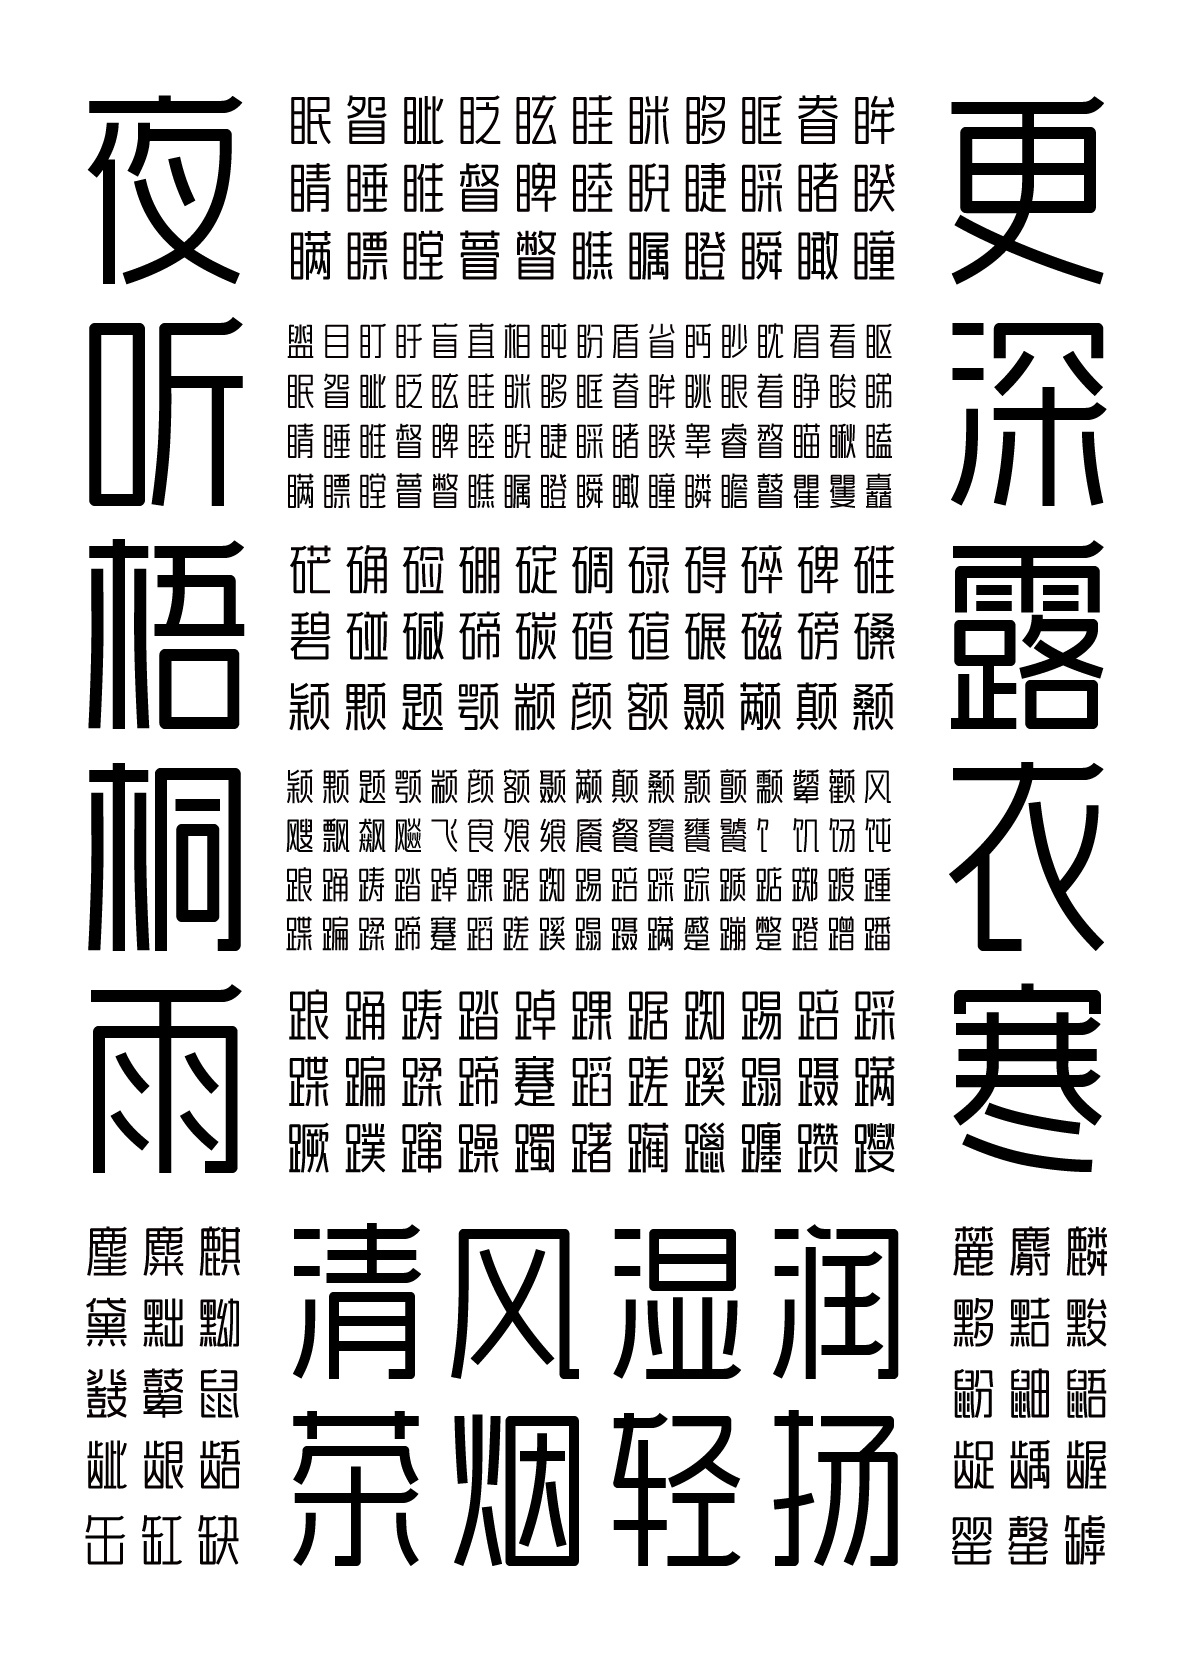 字由设绘颜黑体-CND设计网,中国设计网络首选品牌